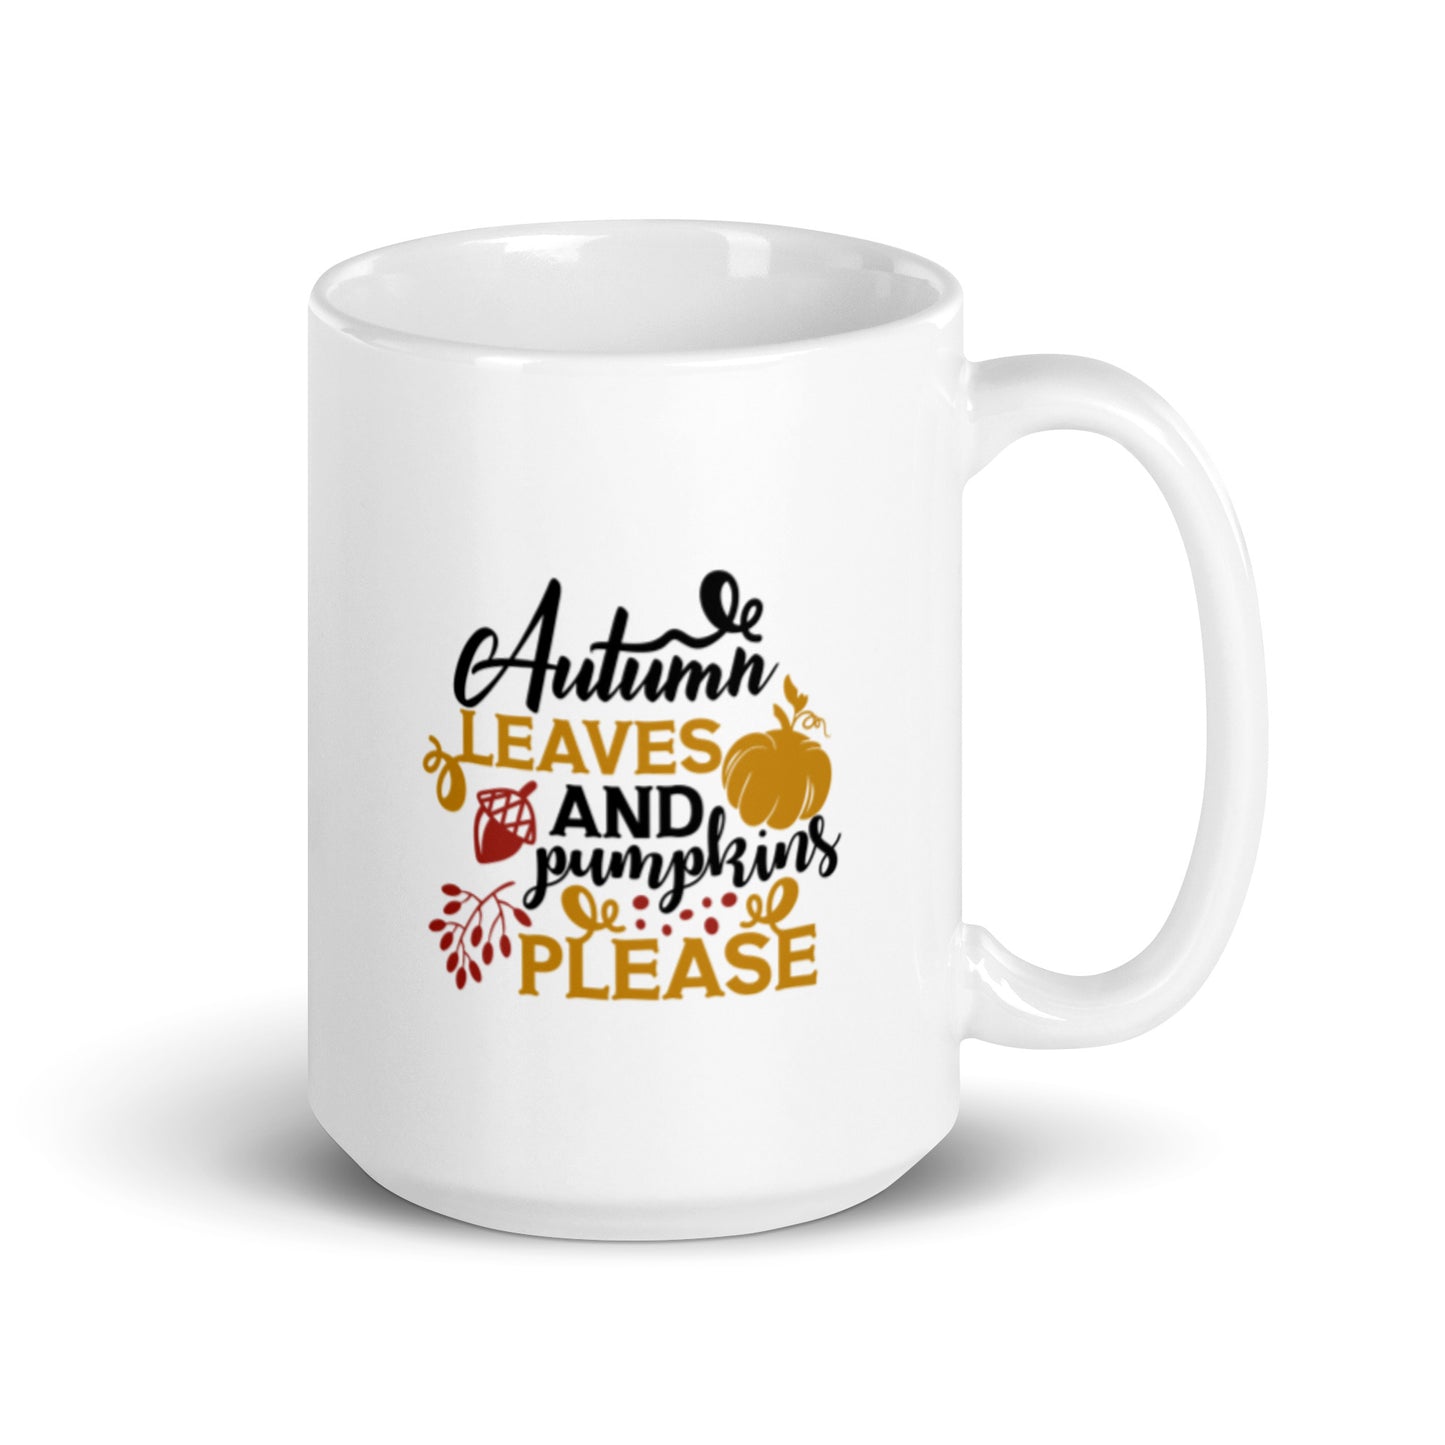 Autumn Blessings White glossy mug